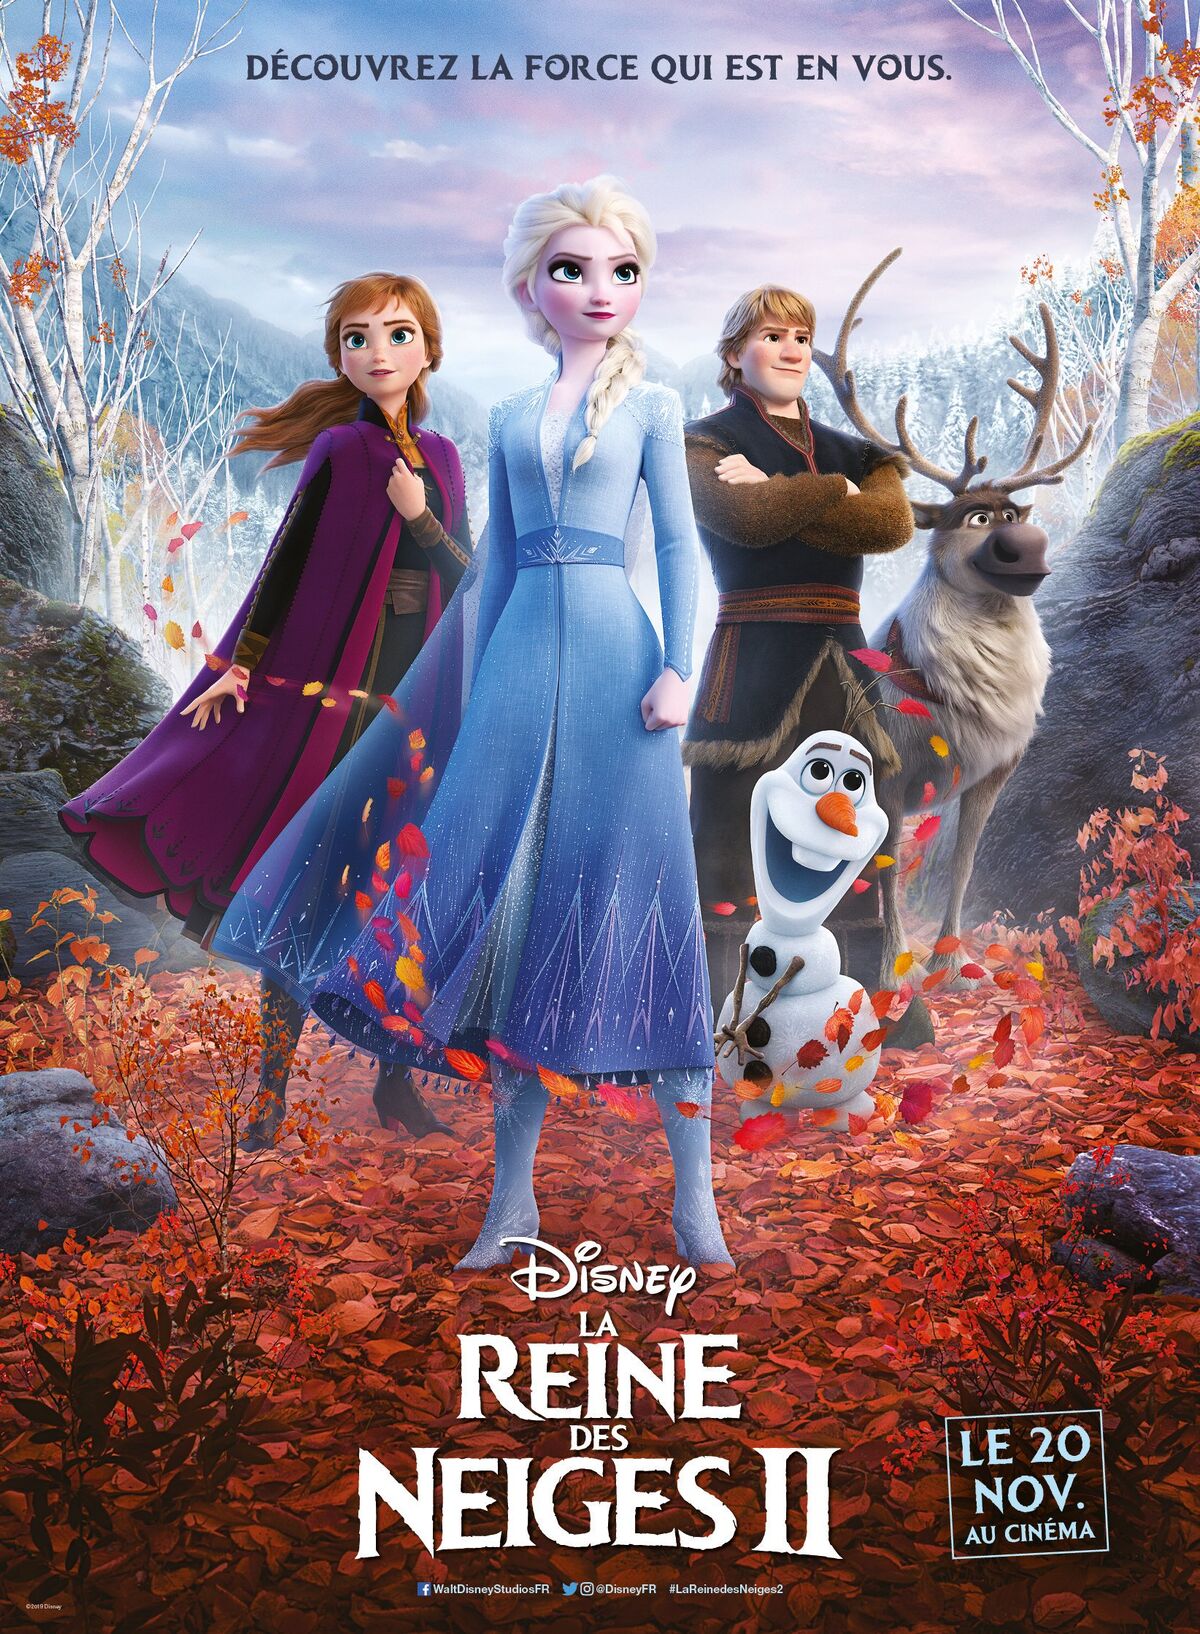 La Reine des neiges 2 », un Disney pur jus